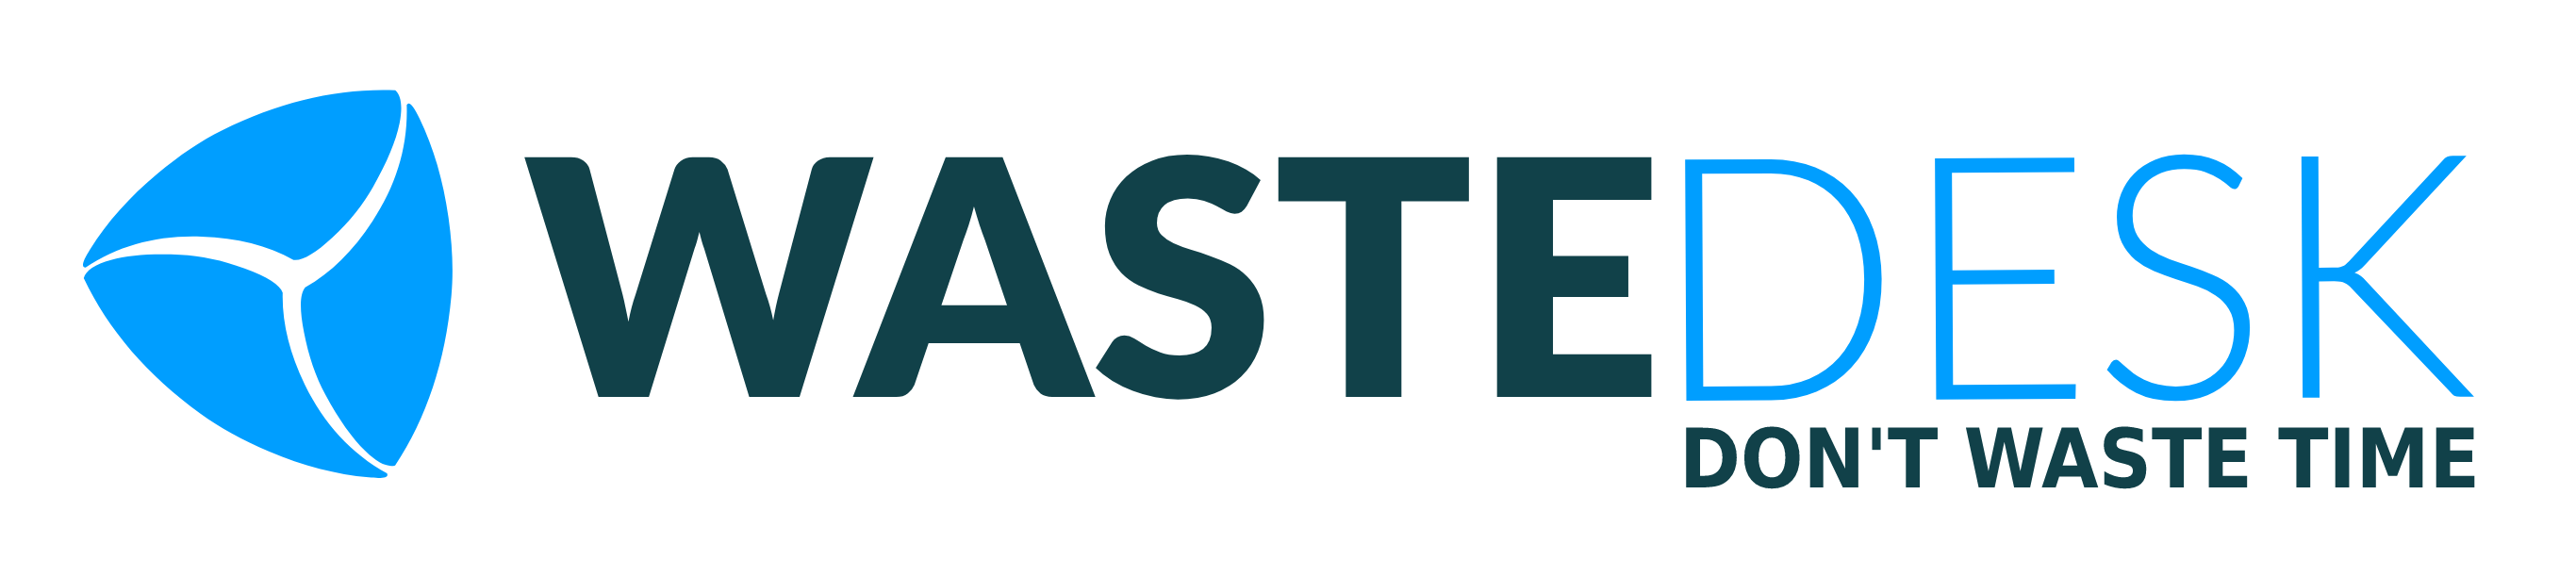 WasteDesk Logo